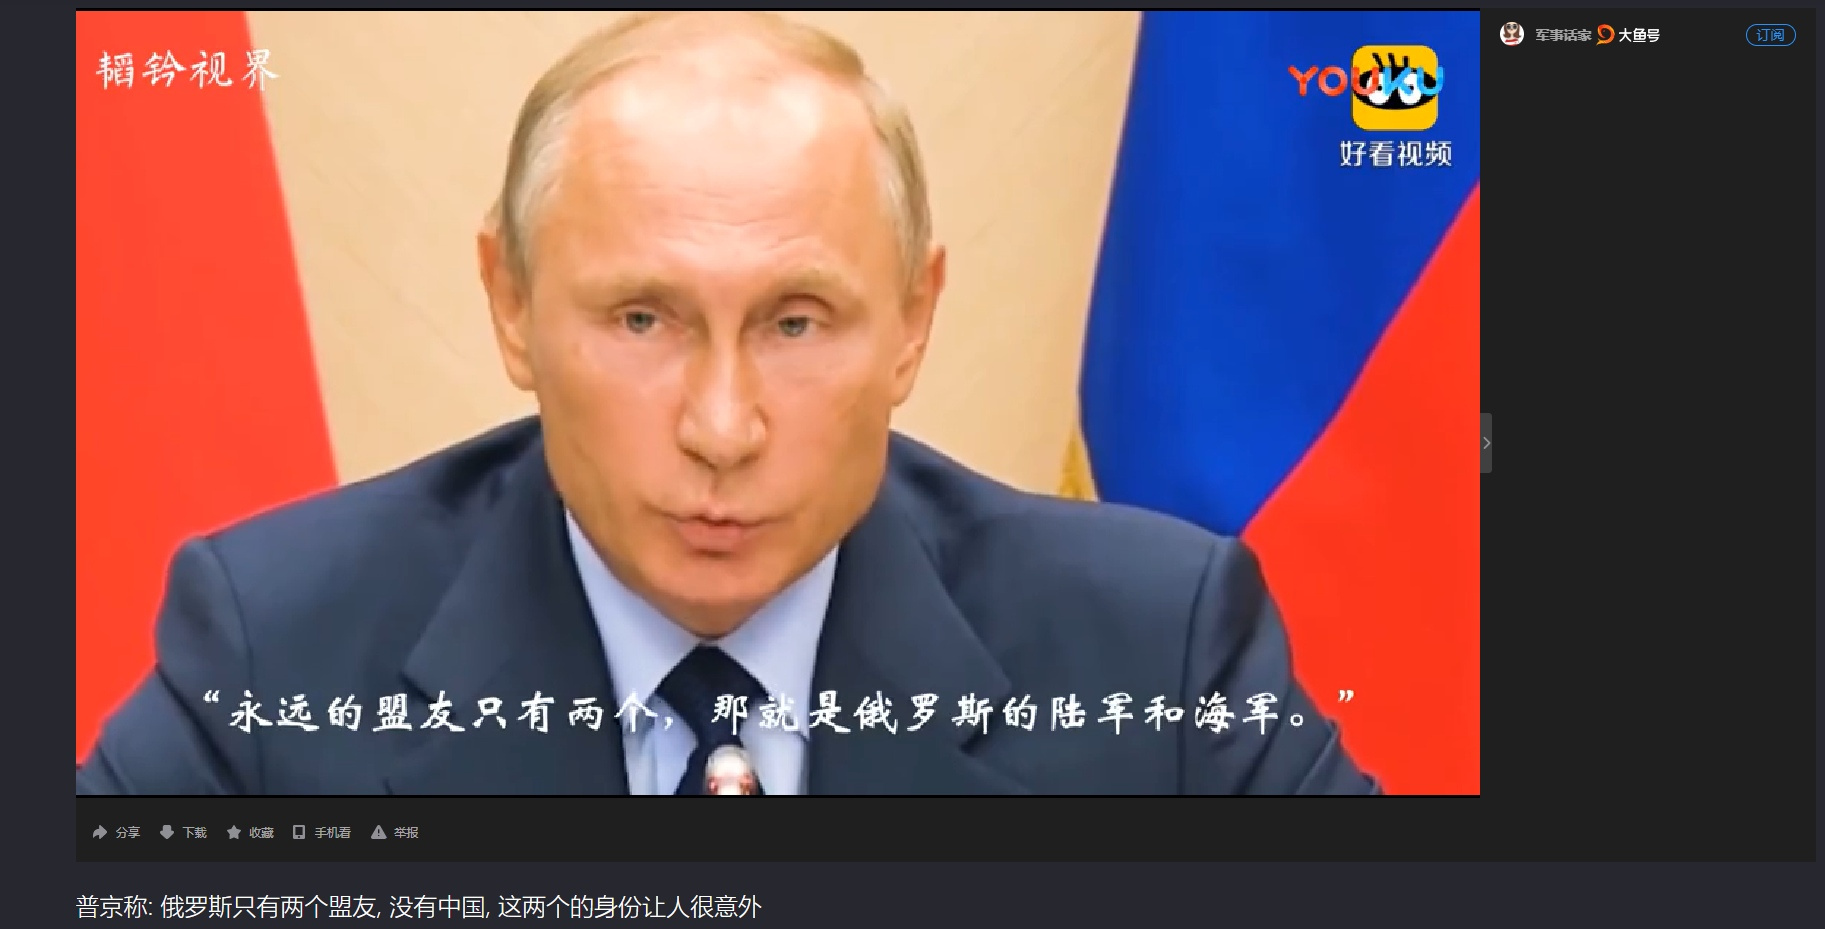 В Китае есть портал с российскими передачами и сериалами. Это — скрин видео, где Владимир Путин говорит, что у России только два союзника — армия и флот